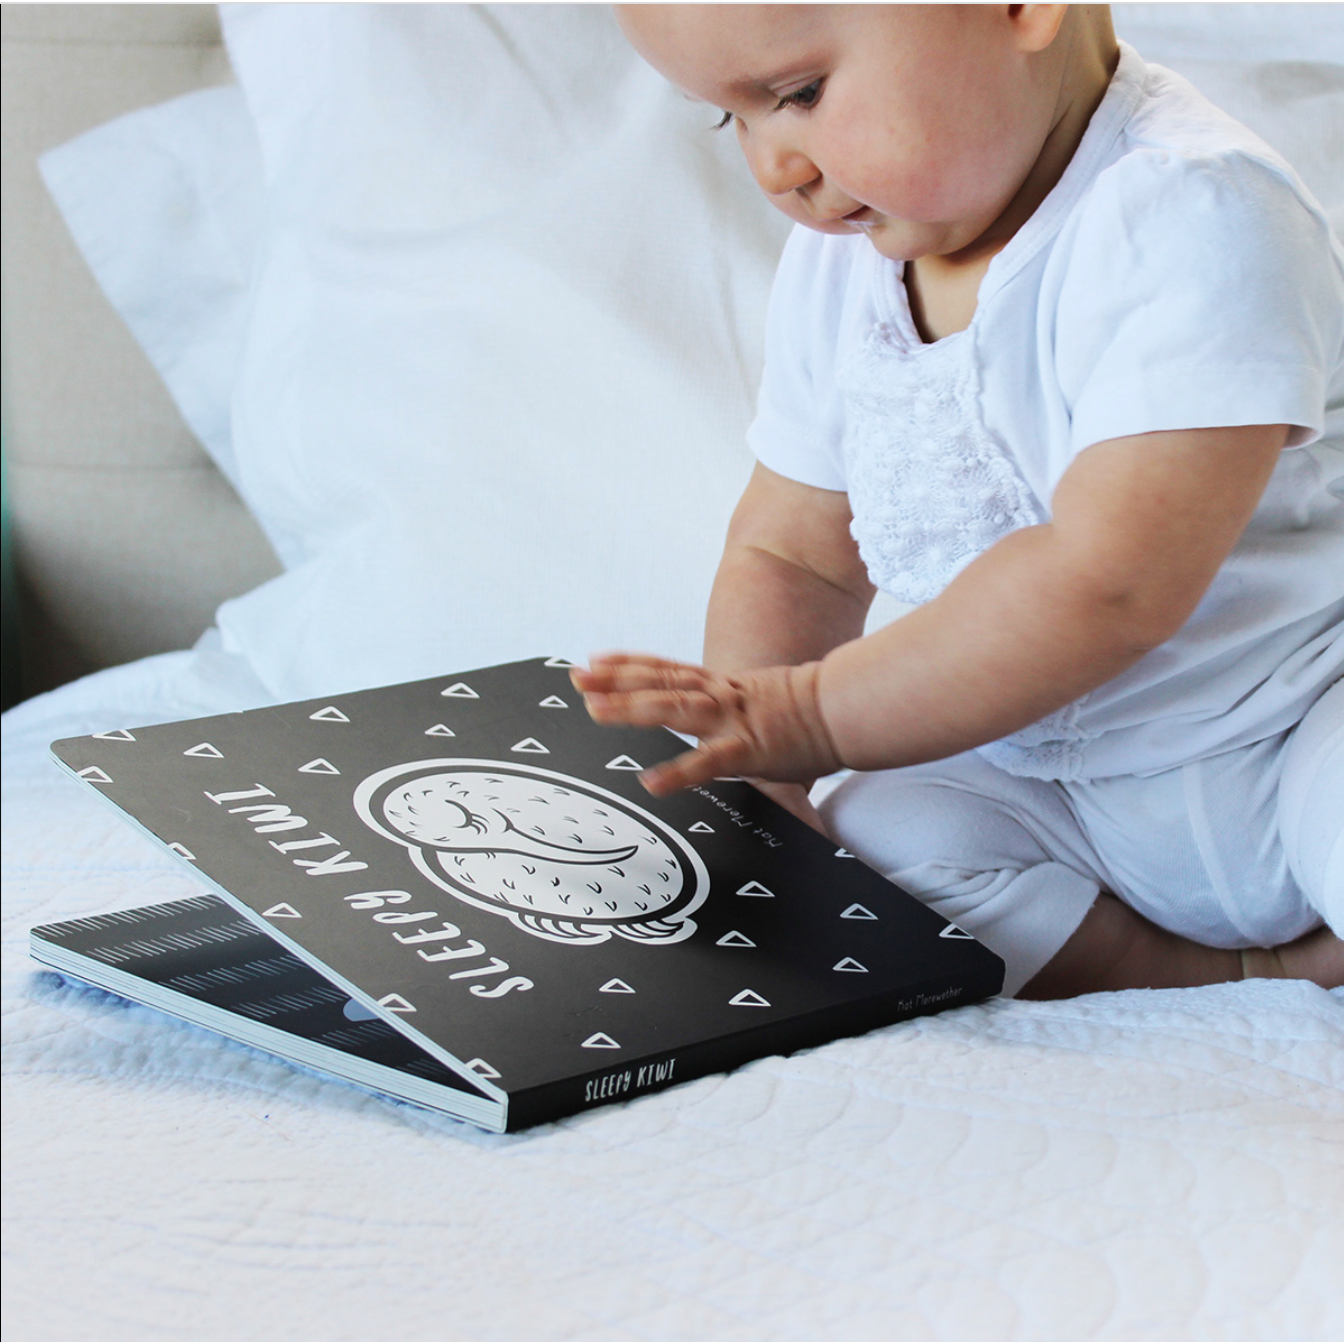 Baby playing with Sleepy Kiwi - Board Book.